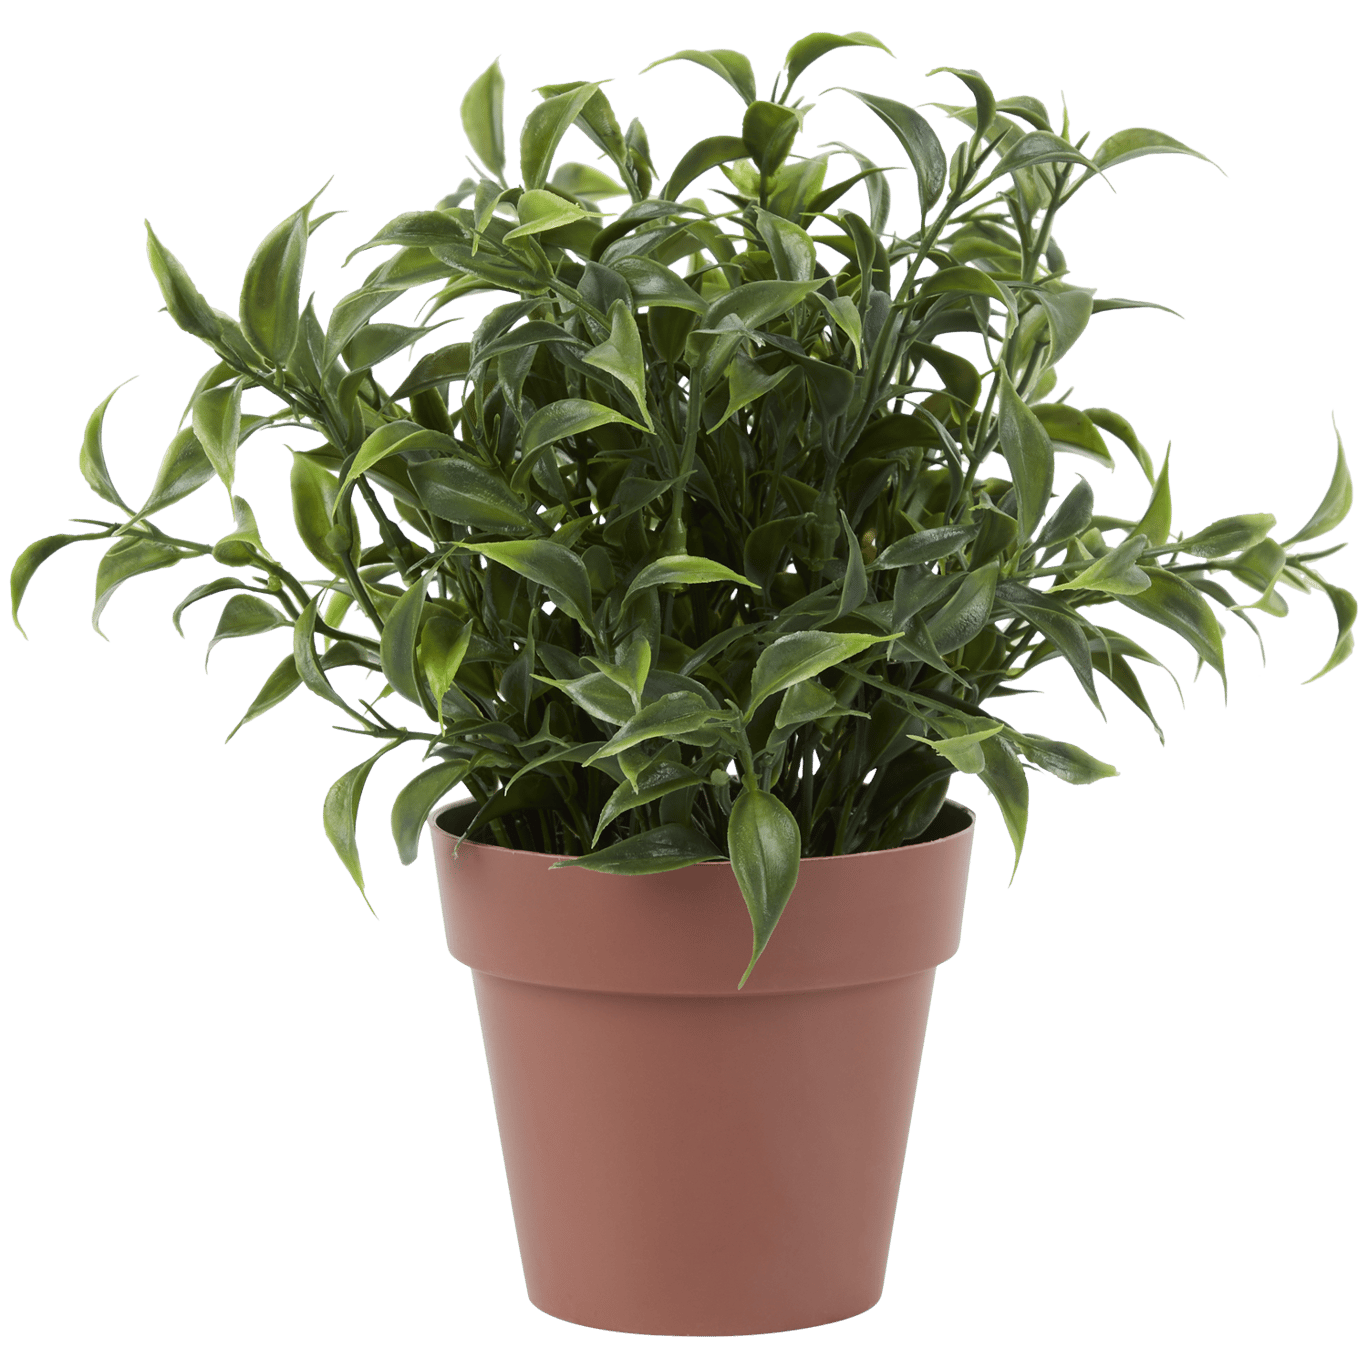 Plante aromatique dans pot